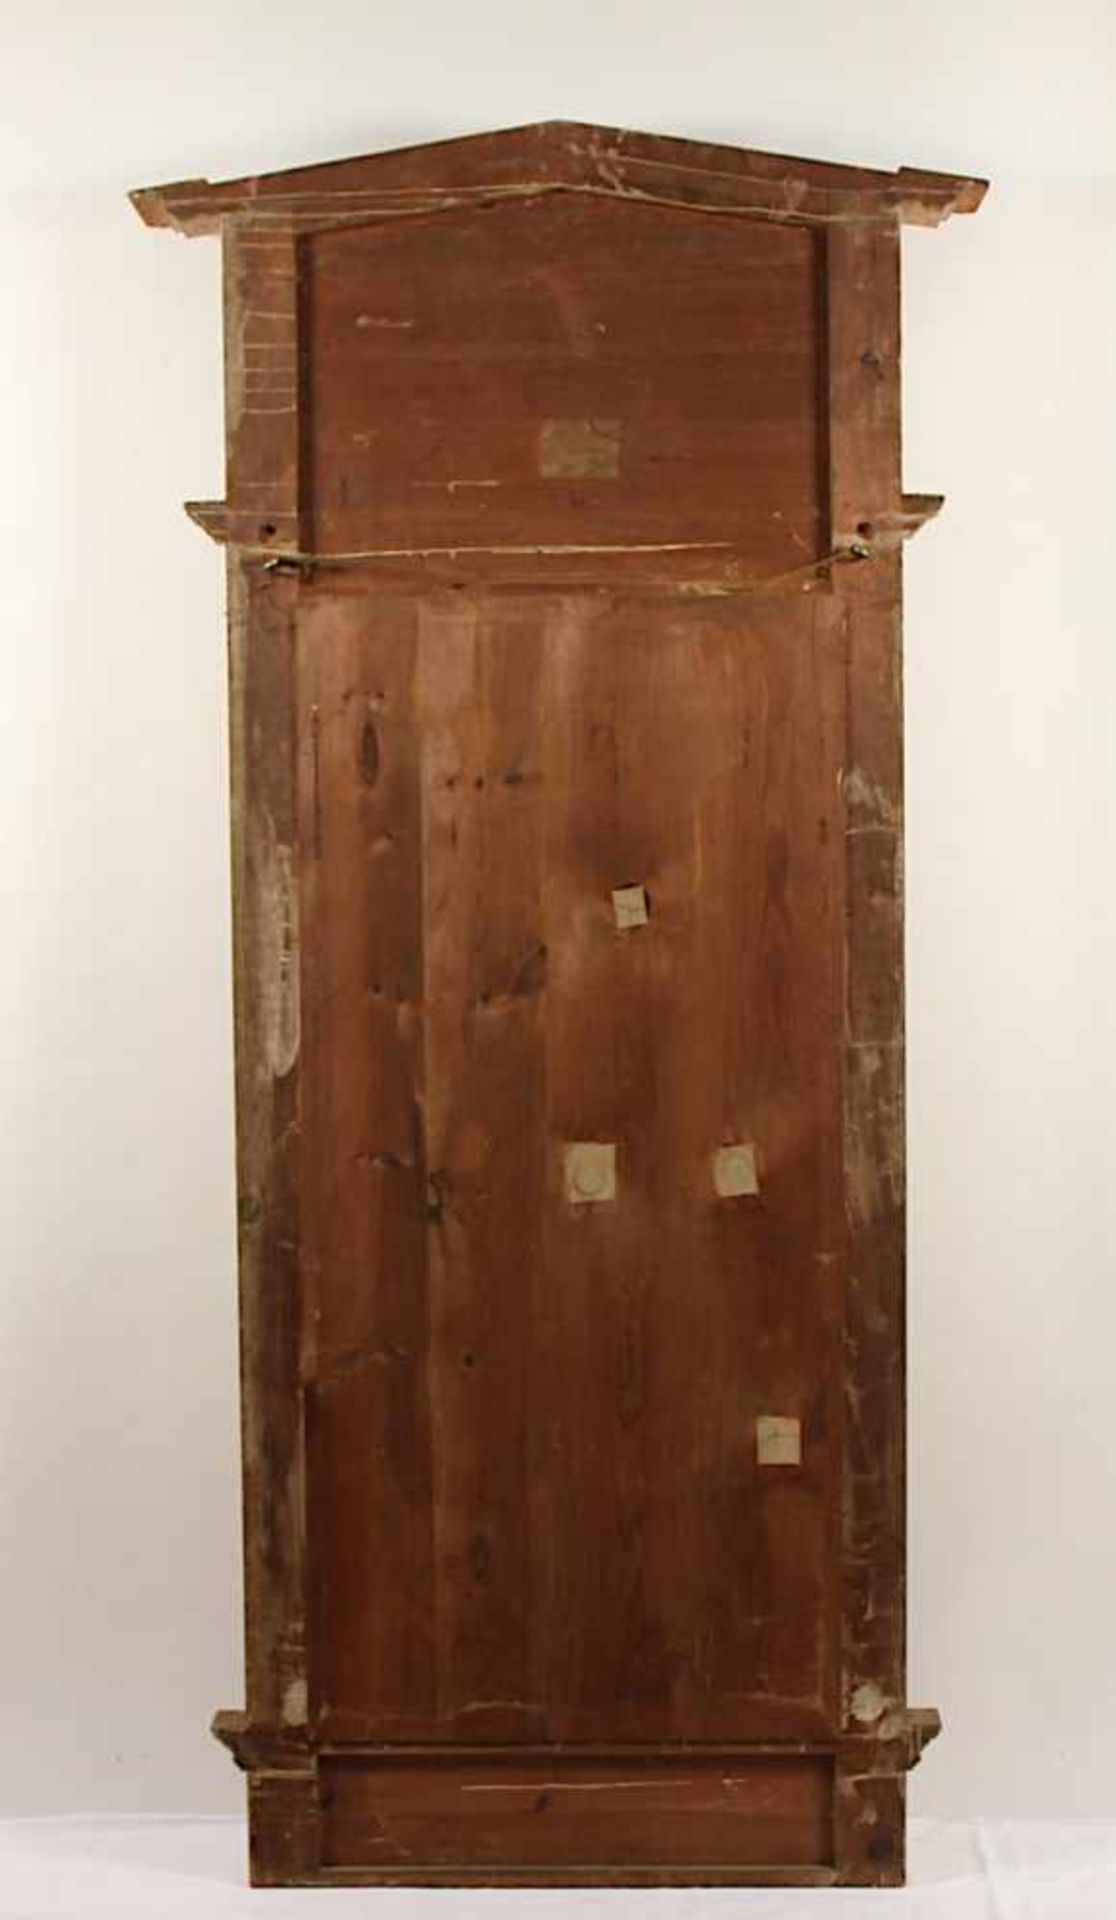 GROSSER KONSOLSPIEGEL, Holz, vergoldet, besch., originales Spiegelglas, H 234, B 109, DEUTSCH, um - Image 3 of 3